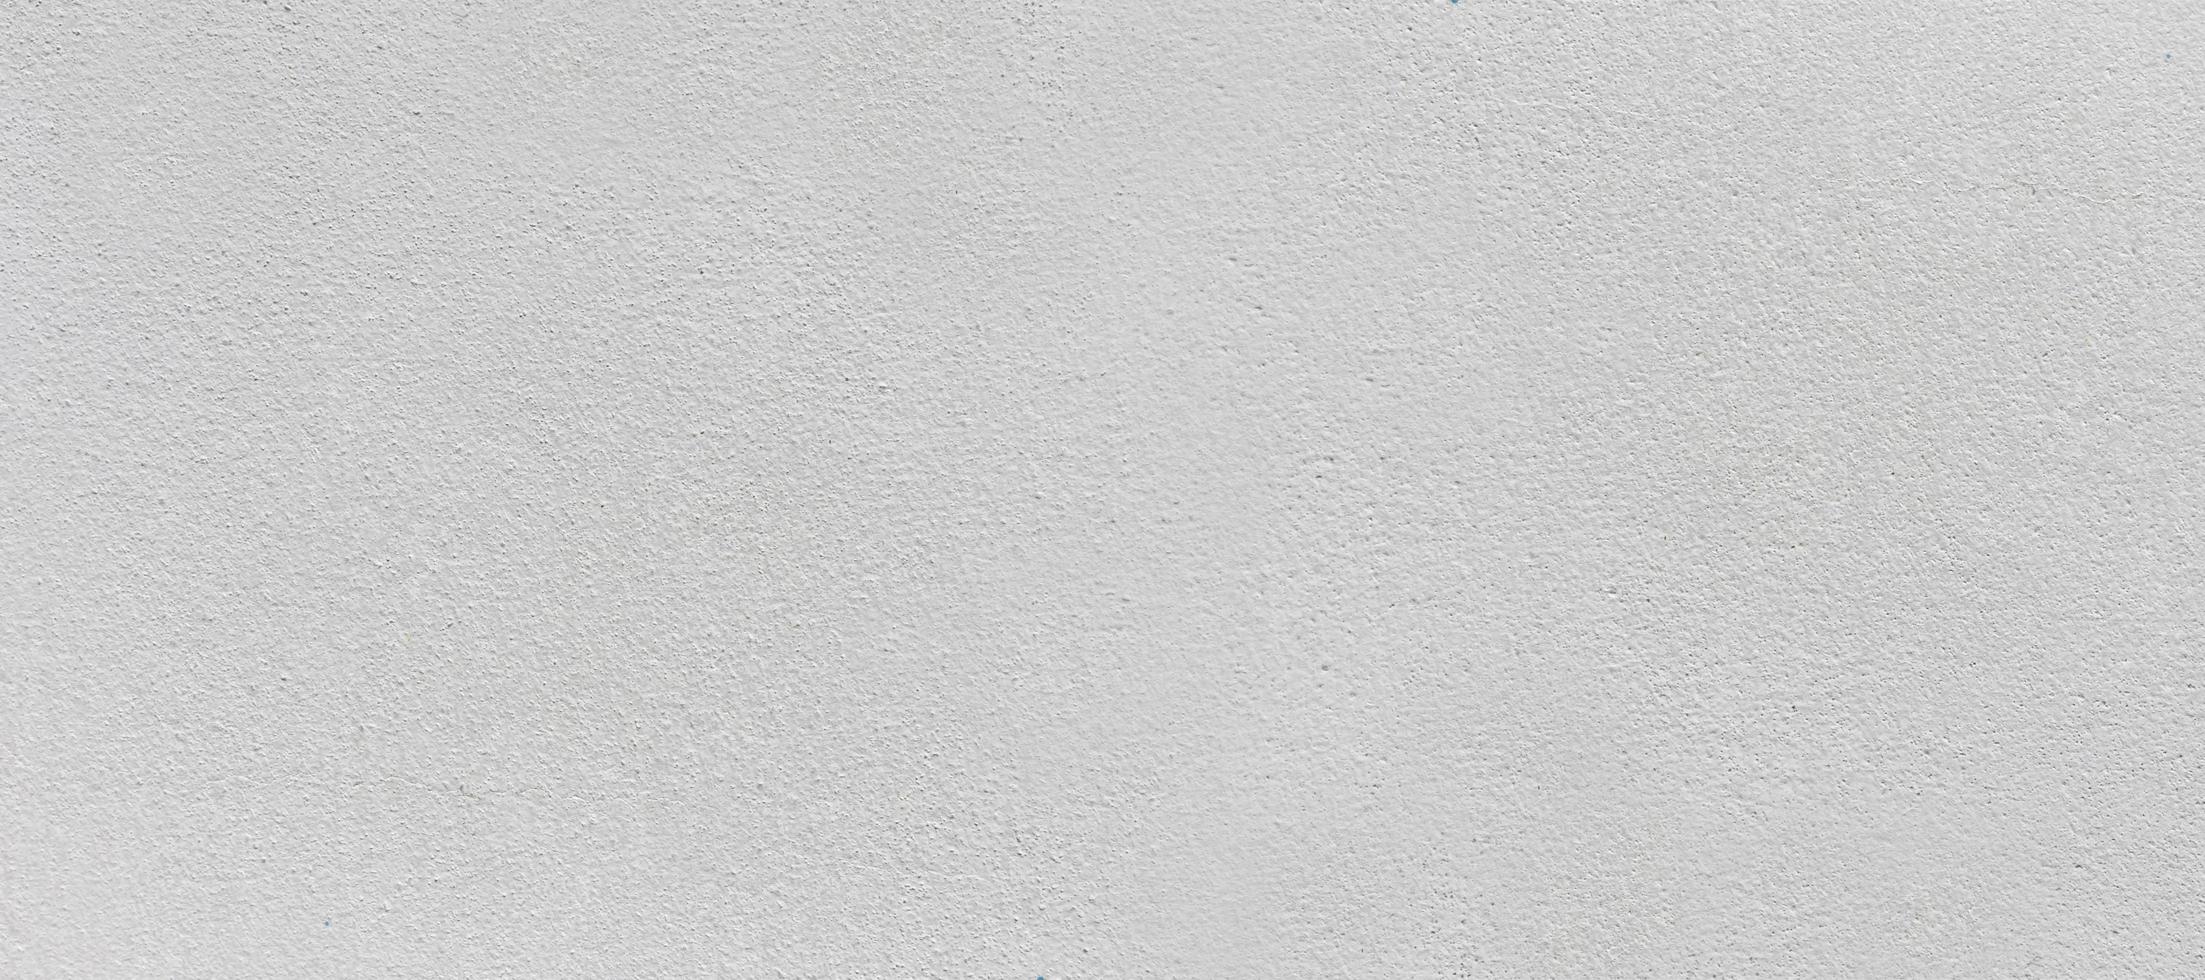 textura blanda de pared de hormigón blanco, textura de fondo abstracto. foto